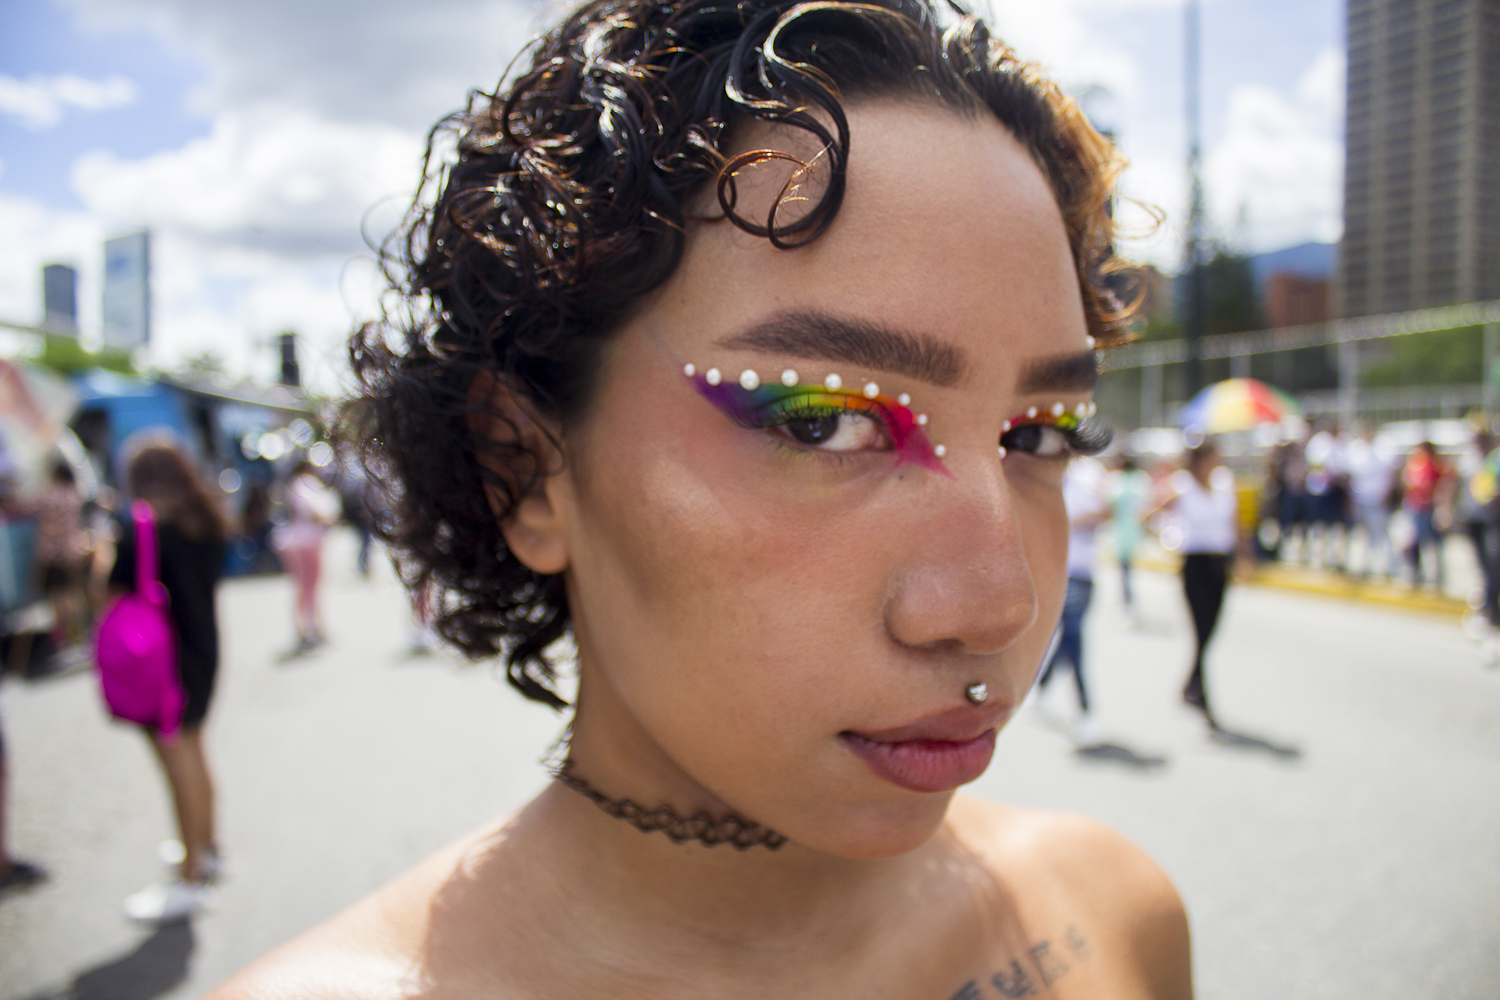 Personas LGBTIQ+ marcharon en Caracas por sus derechos: “En un contexto de violencia y de discriminación, celebrarse es una forma de resistencia”